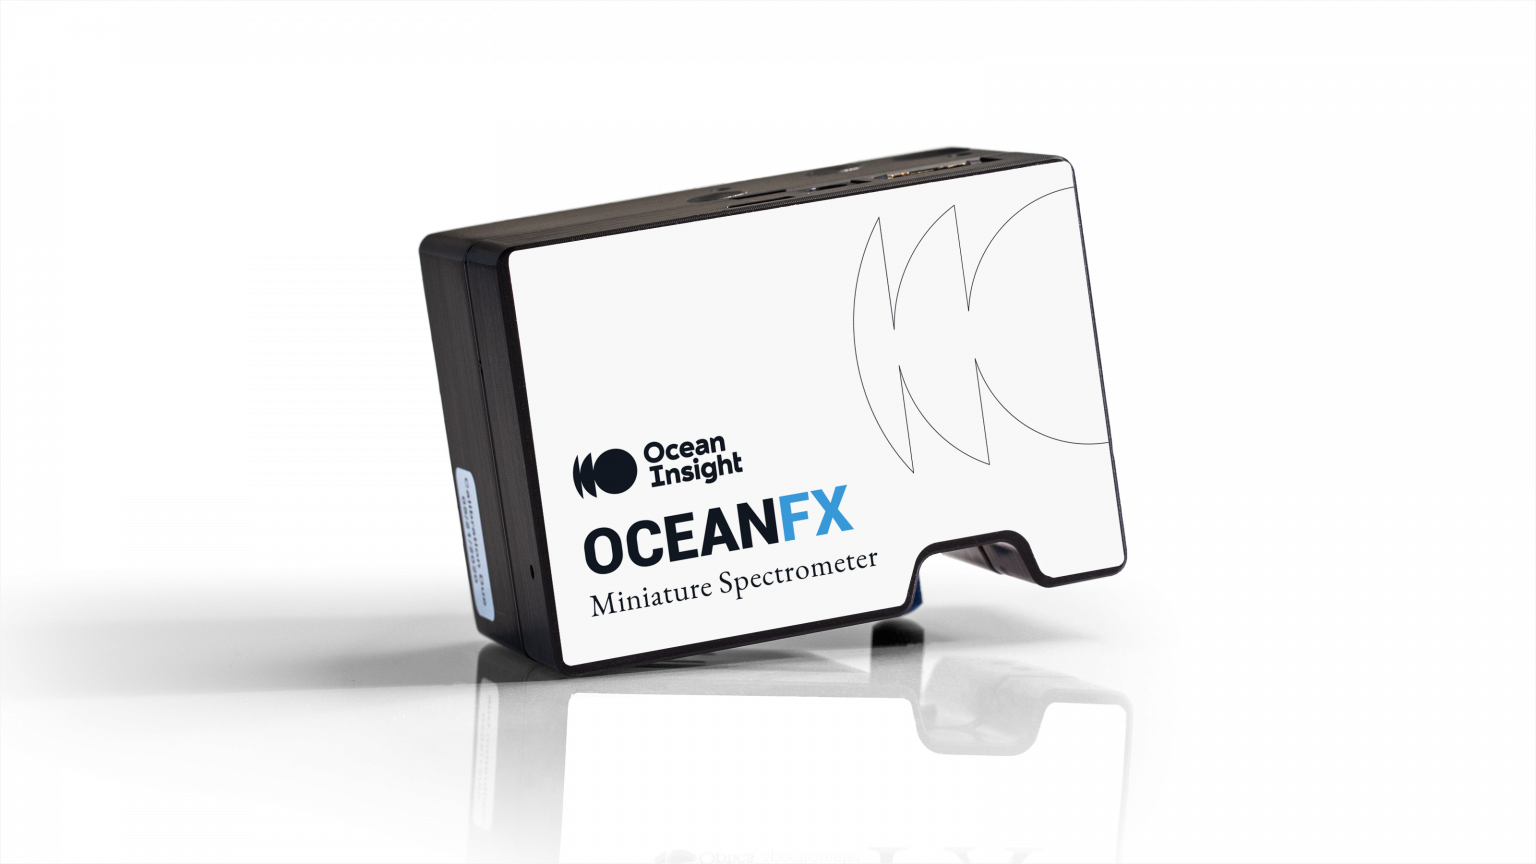 Ocean FX Miniature Spectrometer